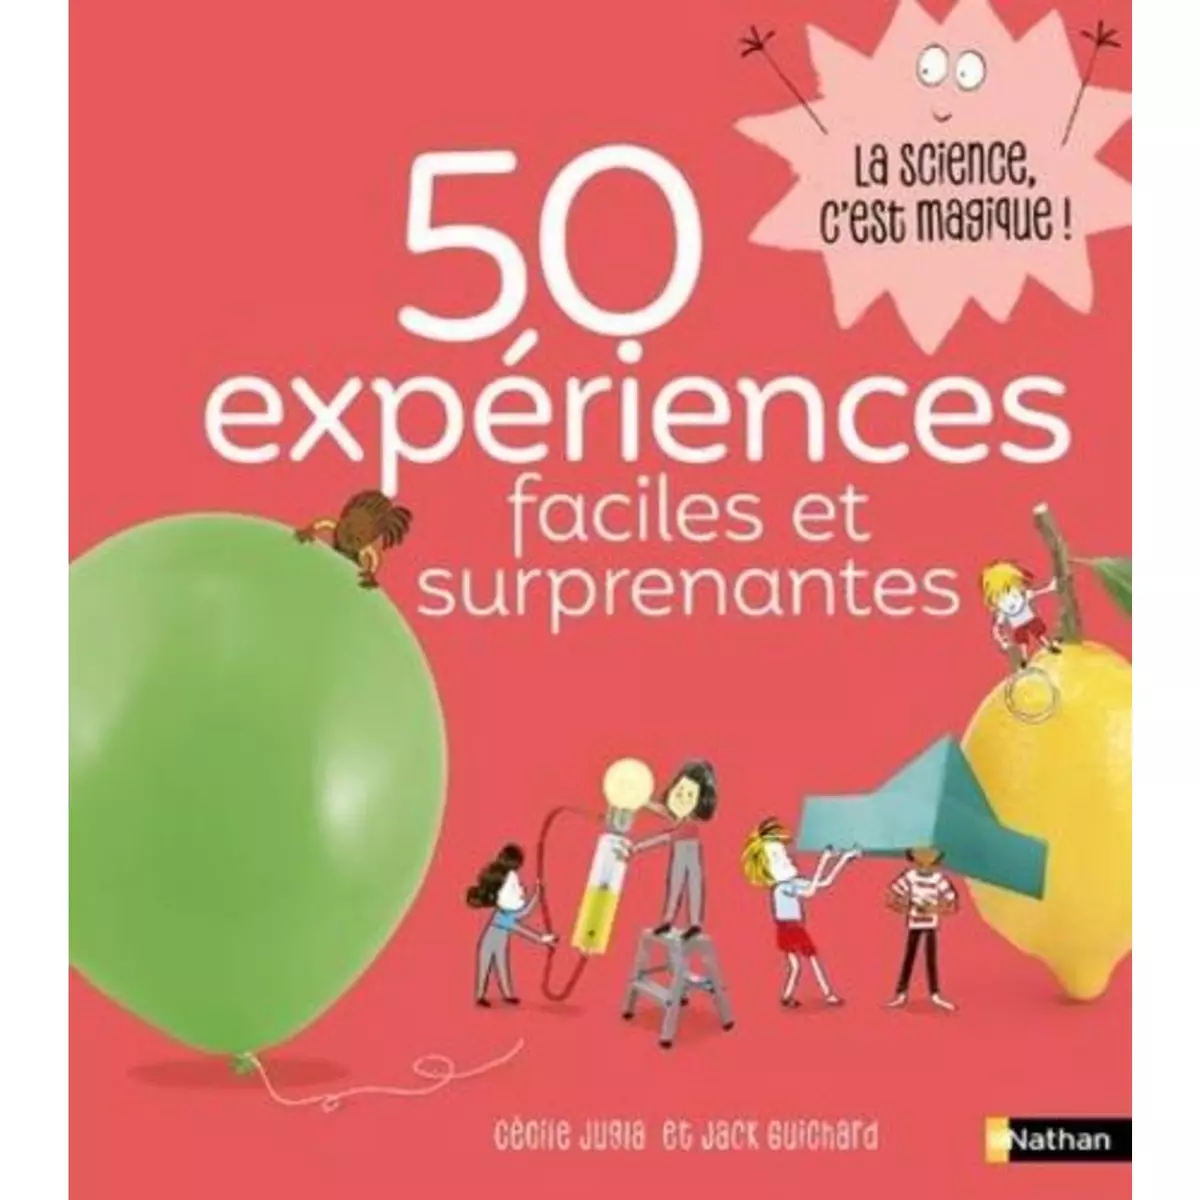  50 EXPERIENCES FACILES ET SURPRENANTES, Jugla Cécile